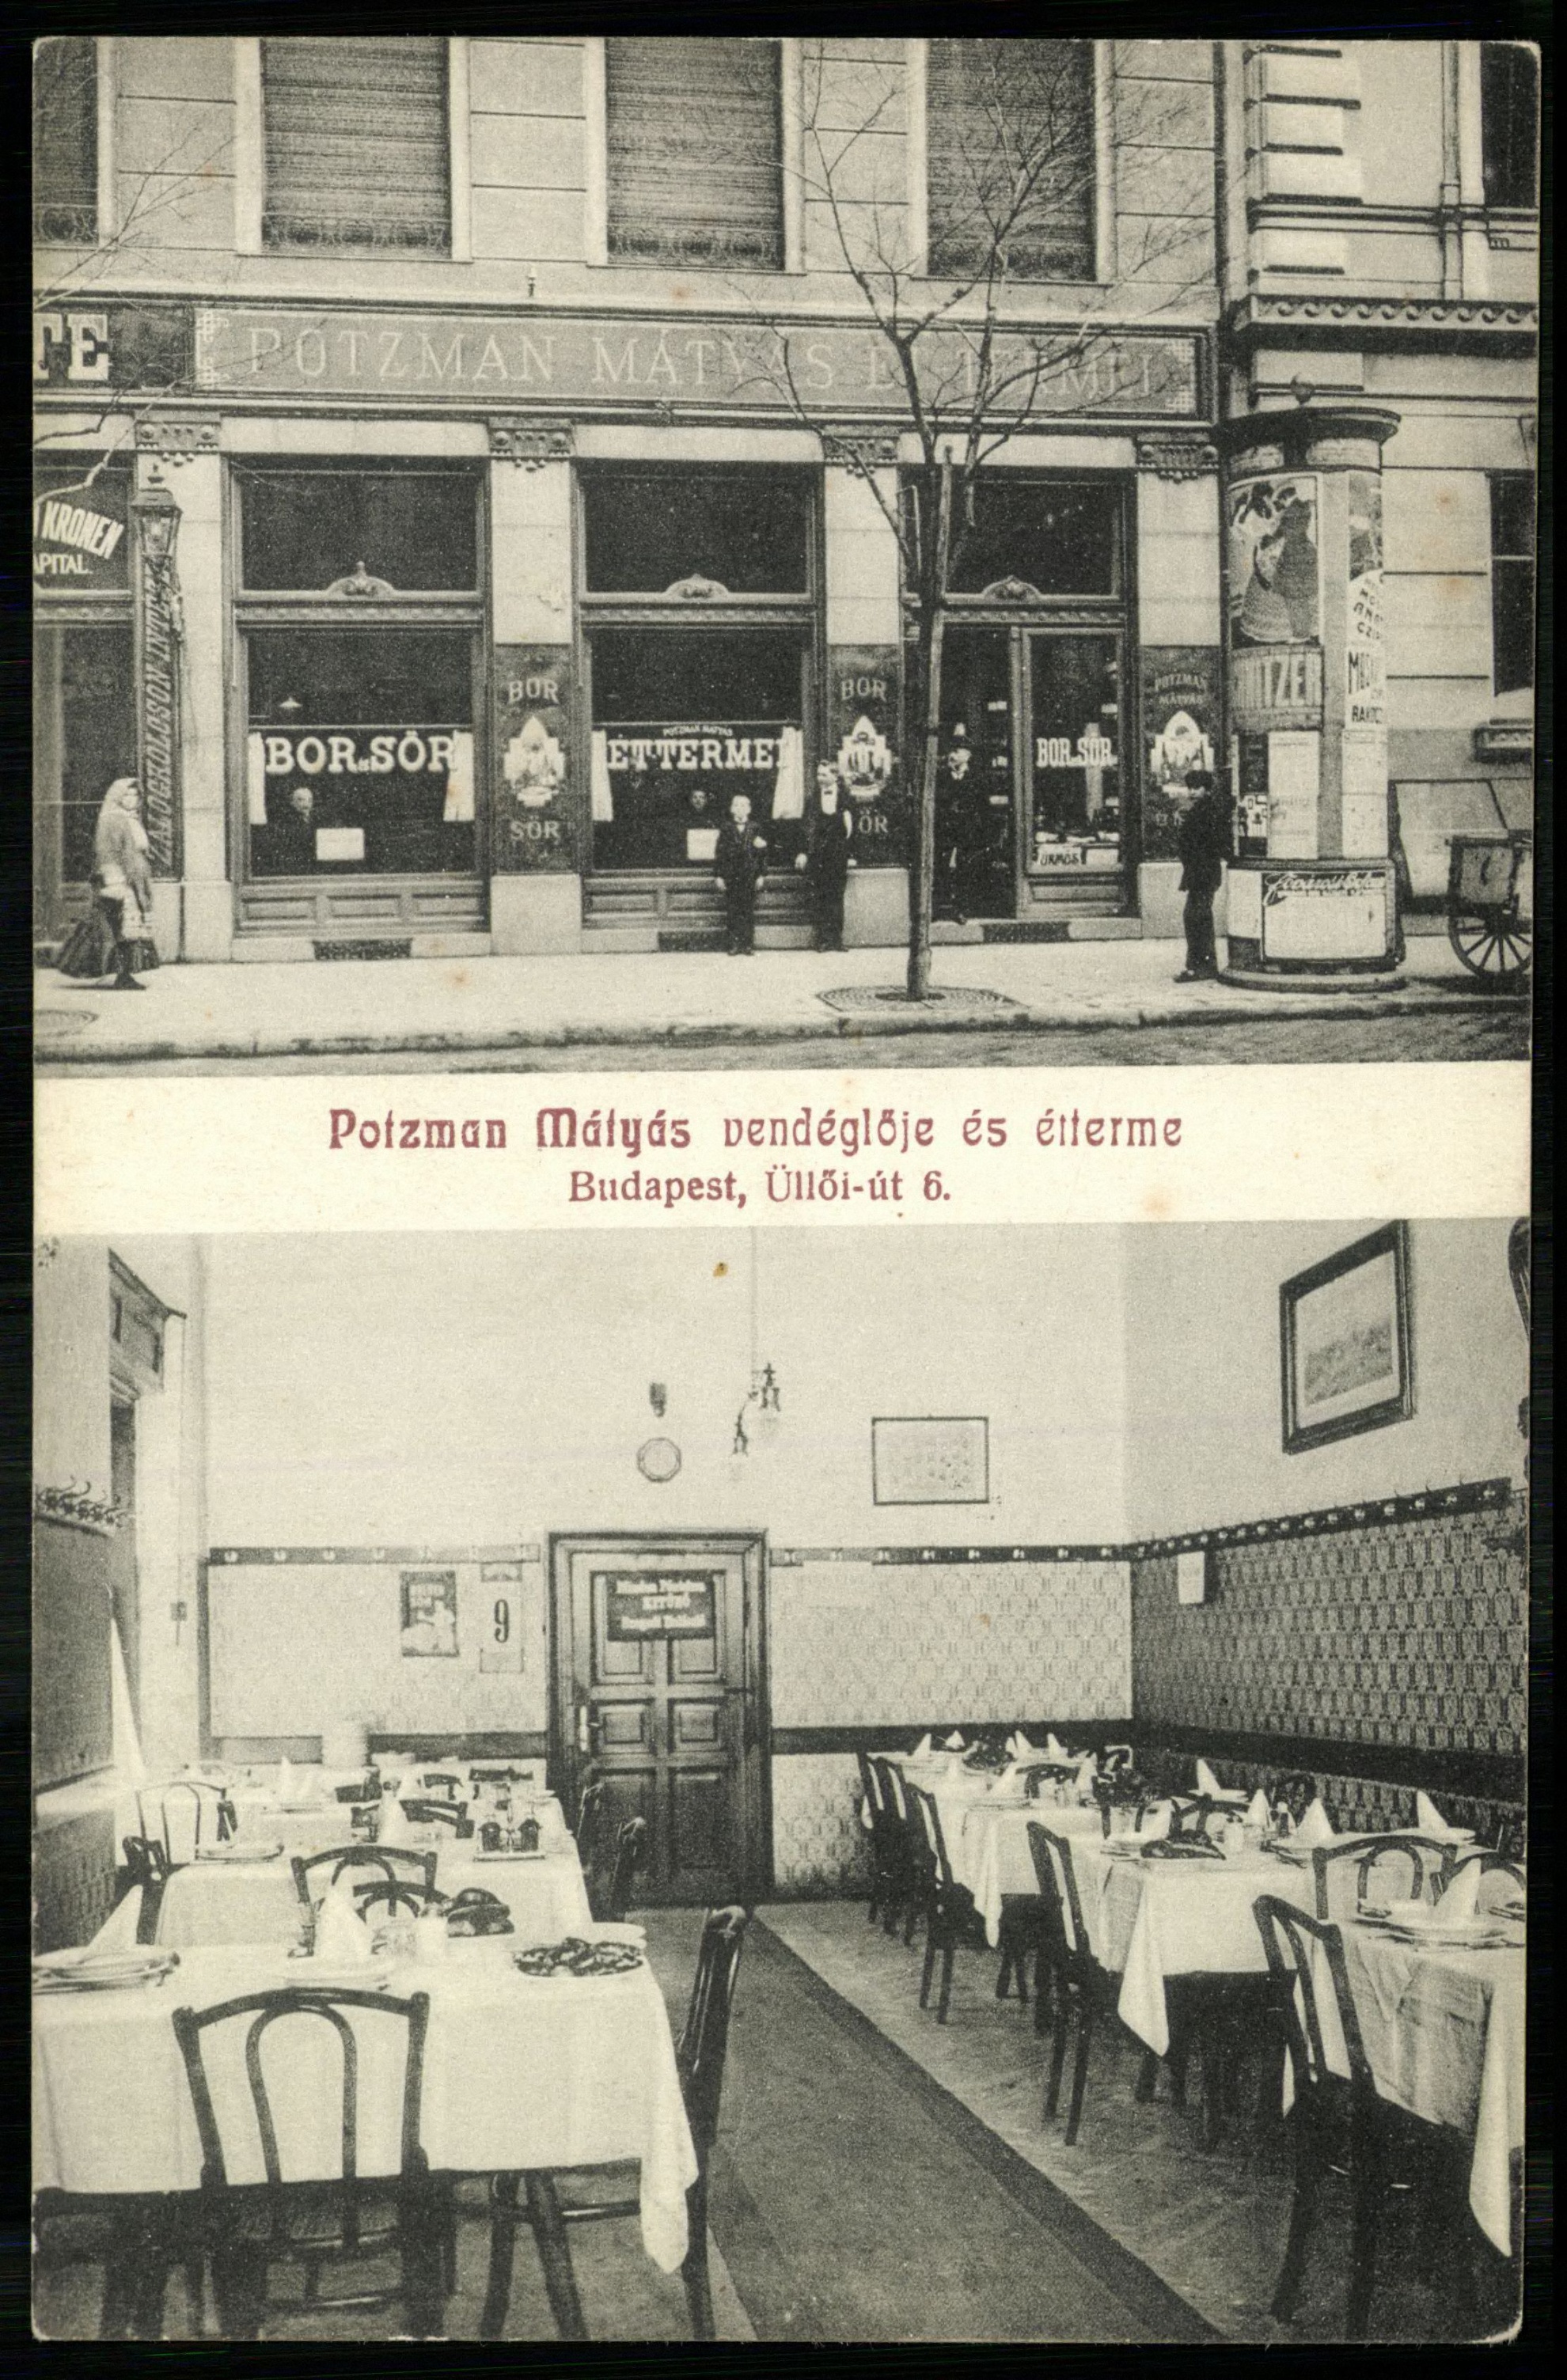 Potzmann Mátyás étterme és vendéglője, Budapest, Üllői út 6. (Magyar Kereskedelmi és Vendéglátóipari Múzeum CC BY-NC-ND)